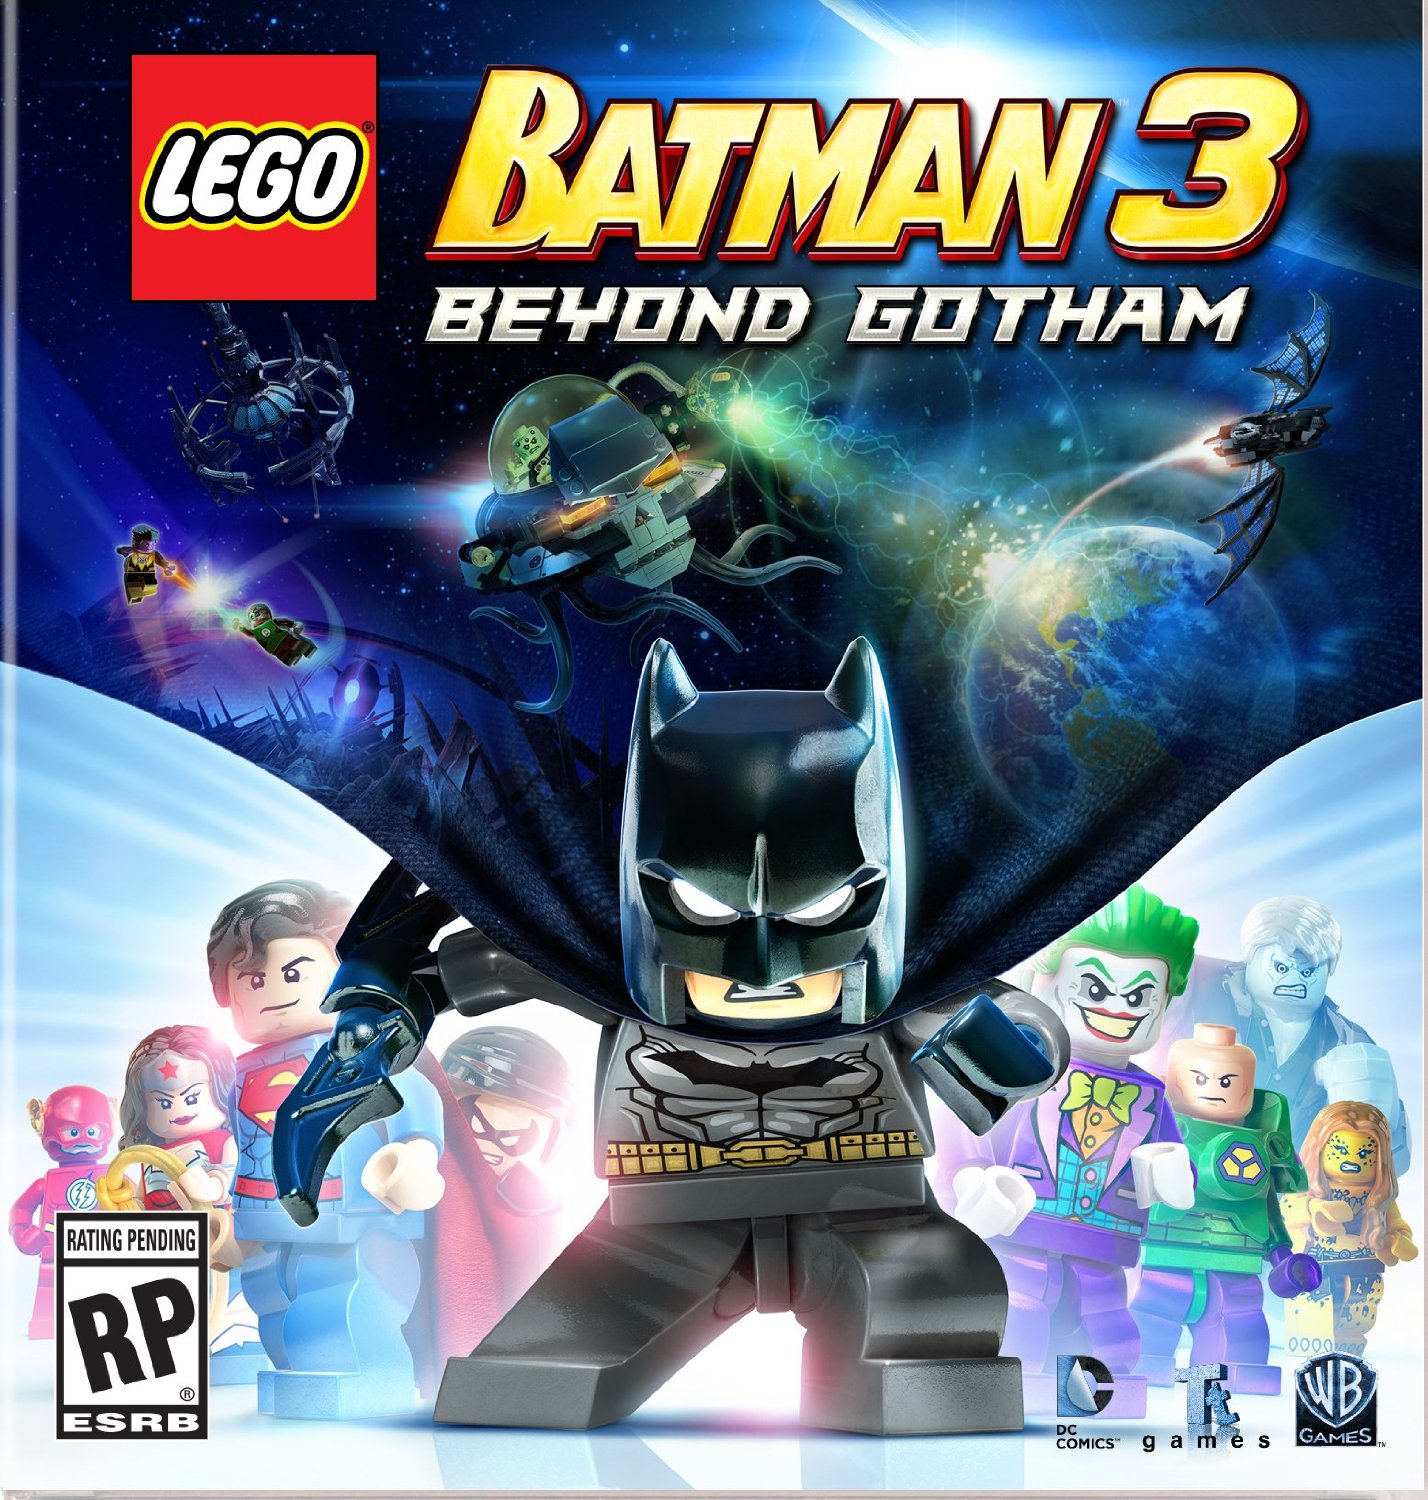 Lego Batman 3 Pc Requirements